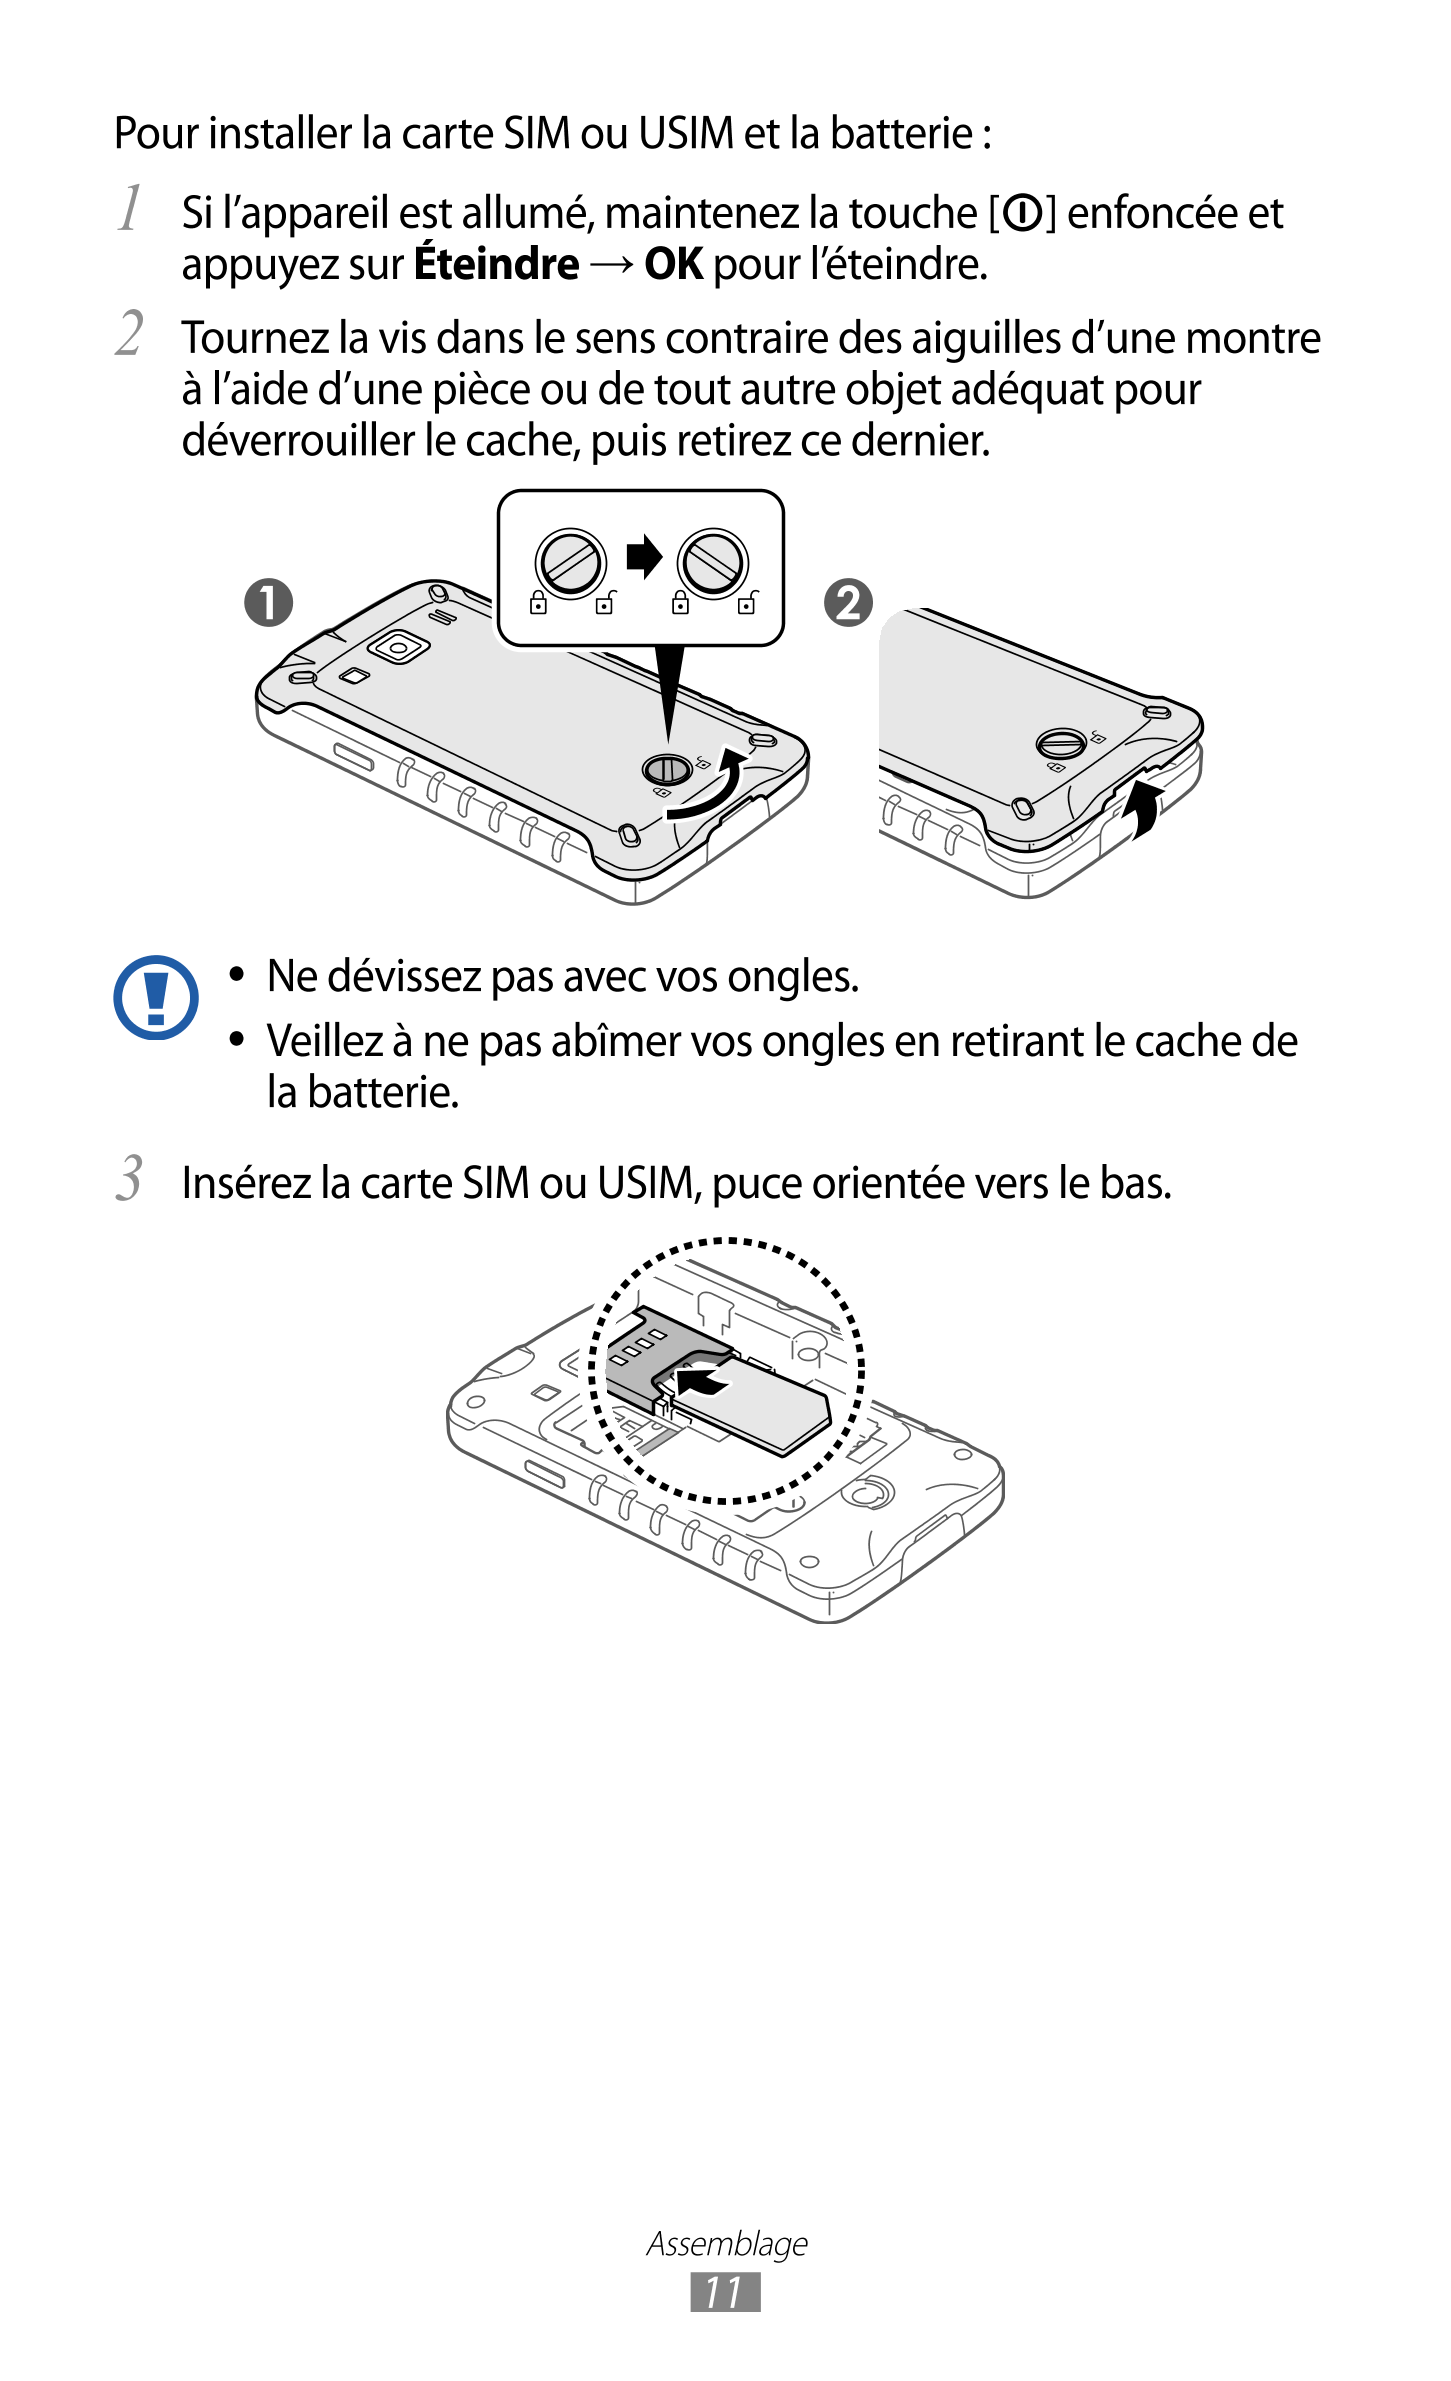 Pour installer la carte SIM ou USIM et la batterie  :
1  Si l’appareil est allumé, maintenez la touche [ ] enfoncée et 
appuyez 